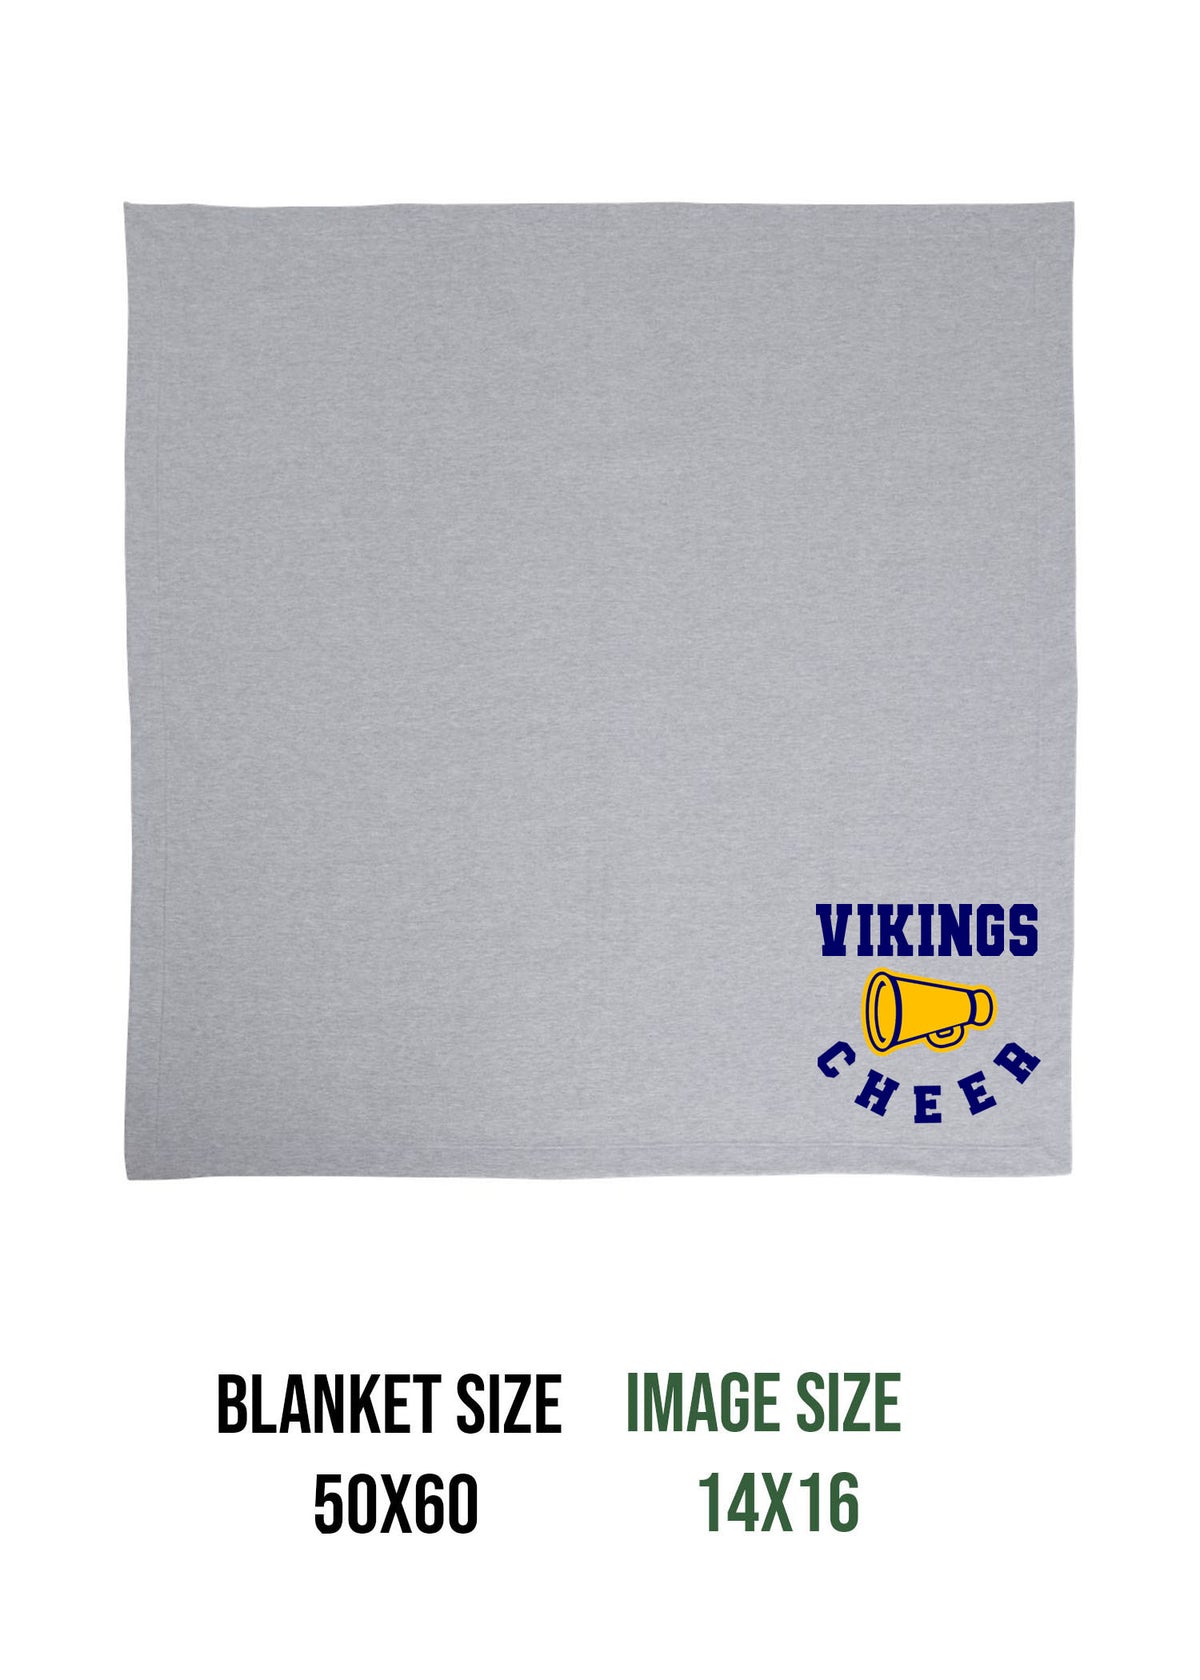 Vernon Vikings Cheer  Design 13 Blanket